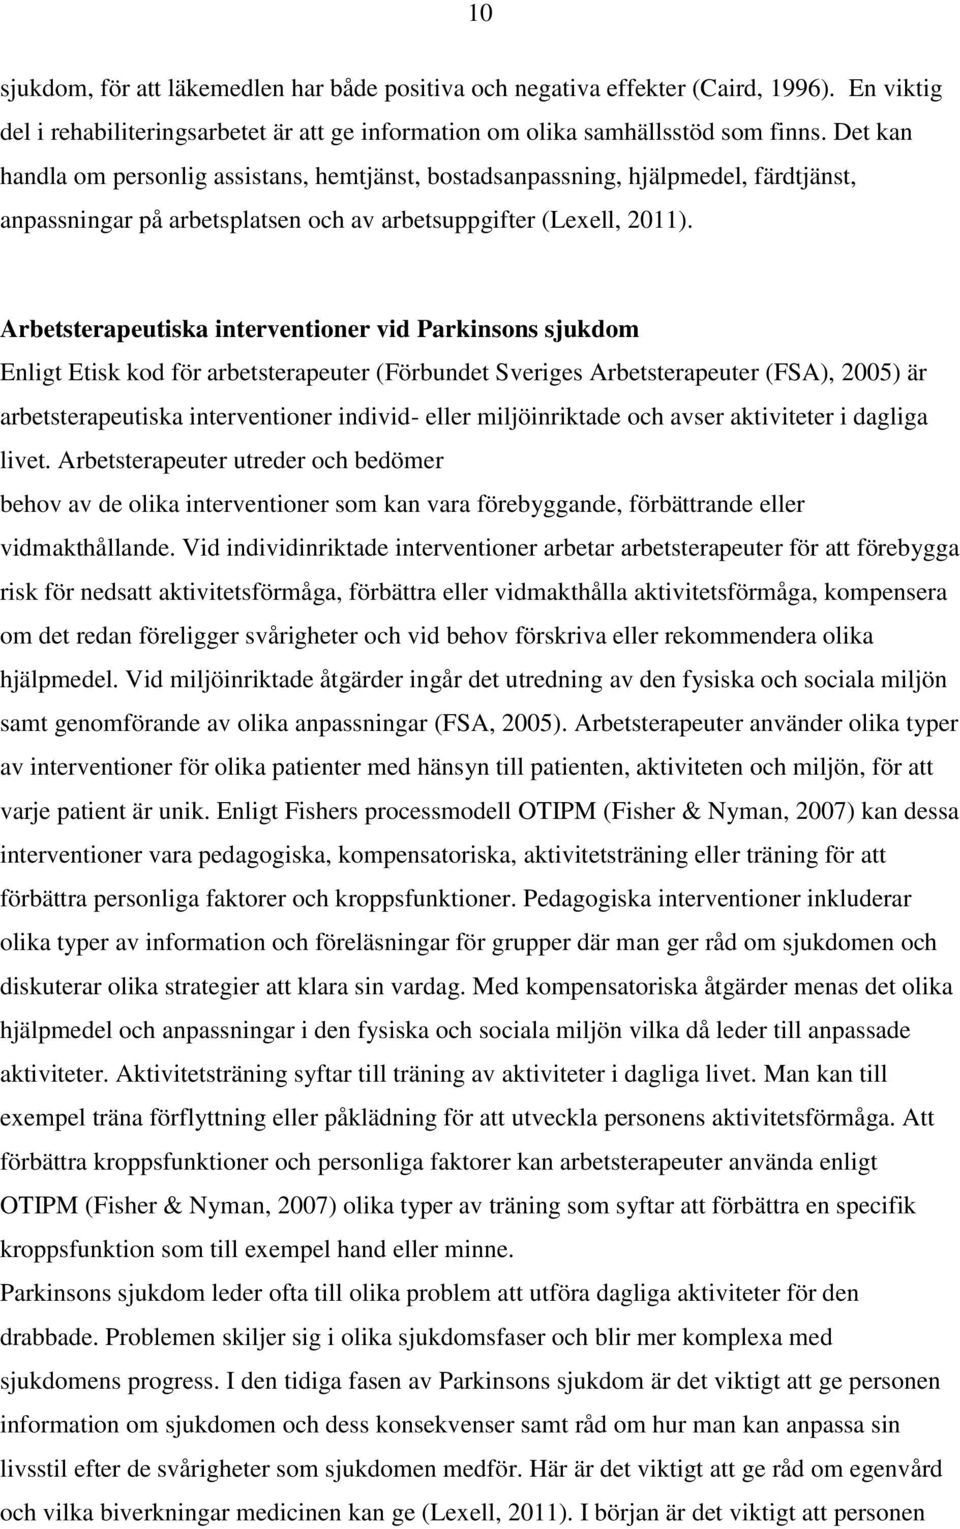 Arbetsterapeutiska interventioner vid Parkinsons sjukdom Enligt Etisk kod för arbetsterapeuter (Förbundet Sveriges Arbetsterapeuter (FSA), 2005) är arbetsterapeutiska interventioner individ- eller